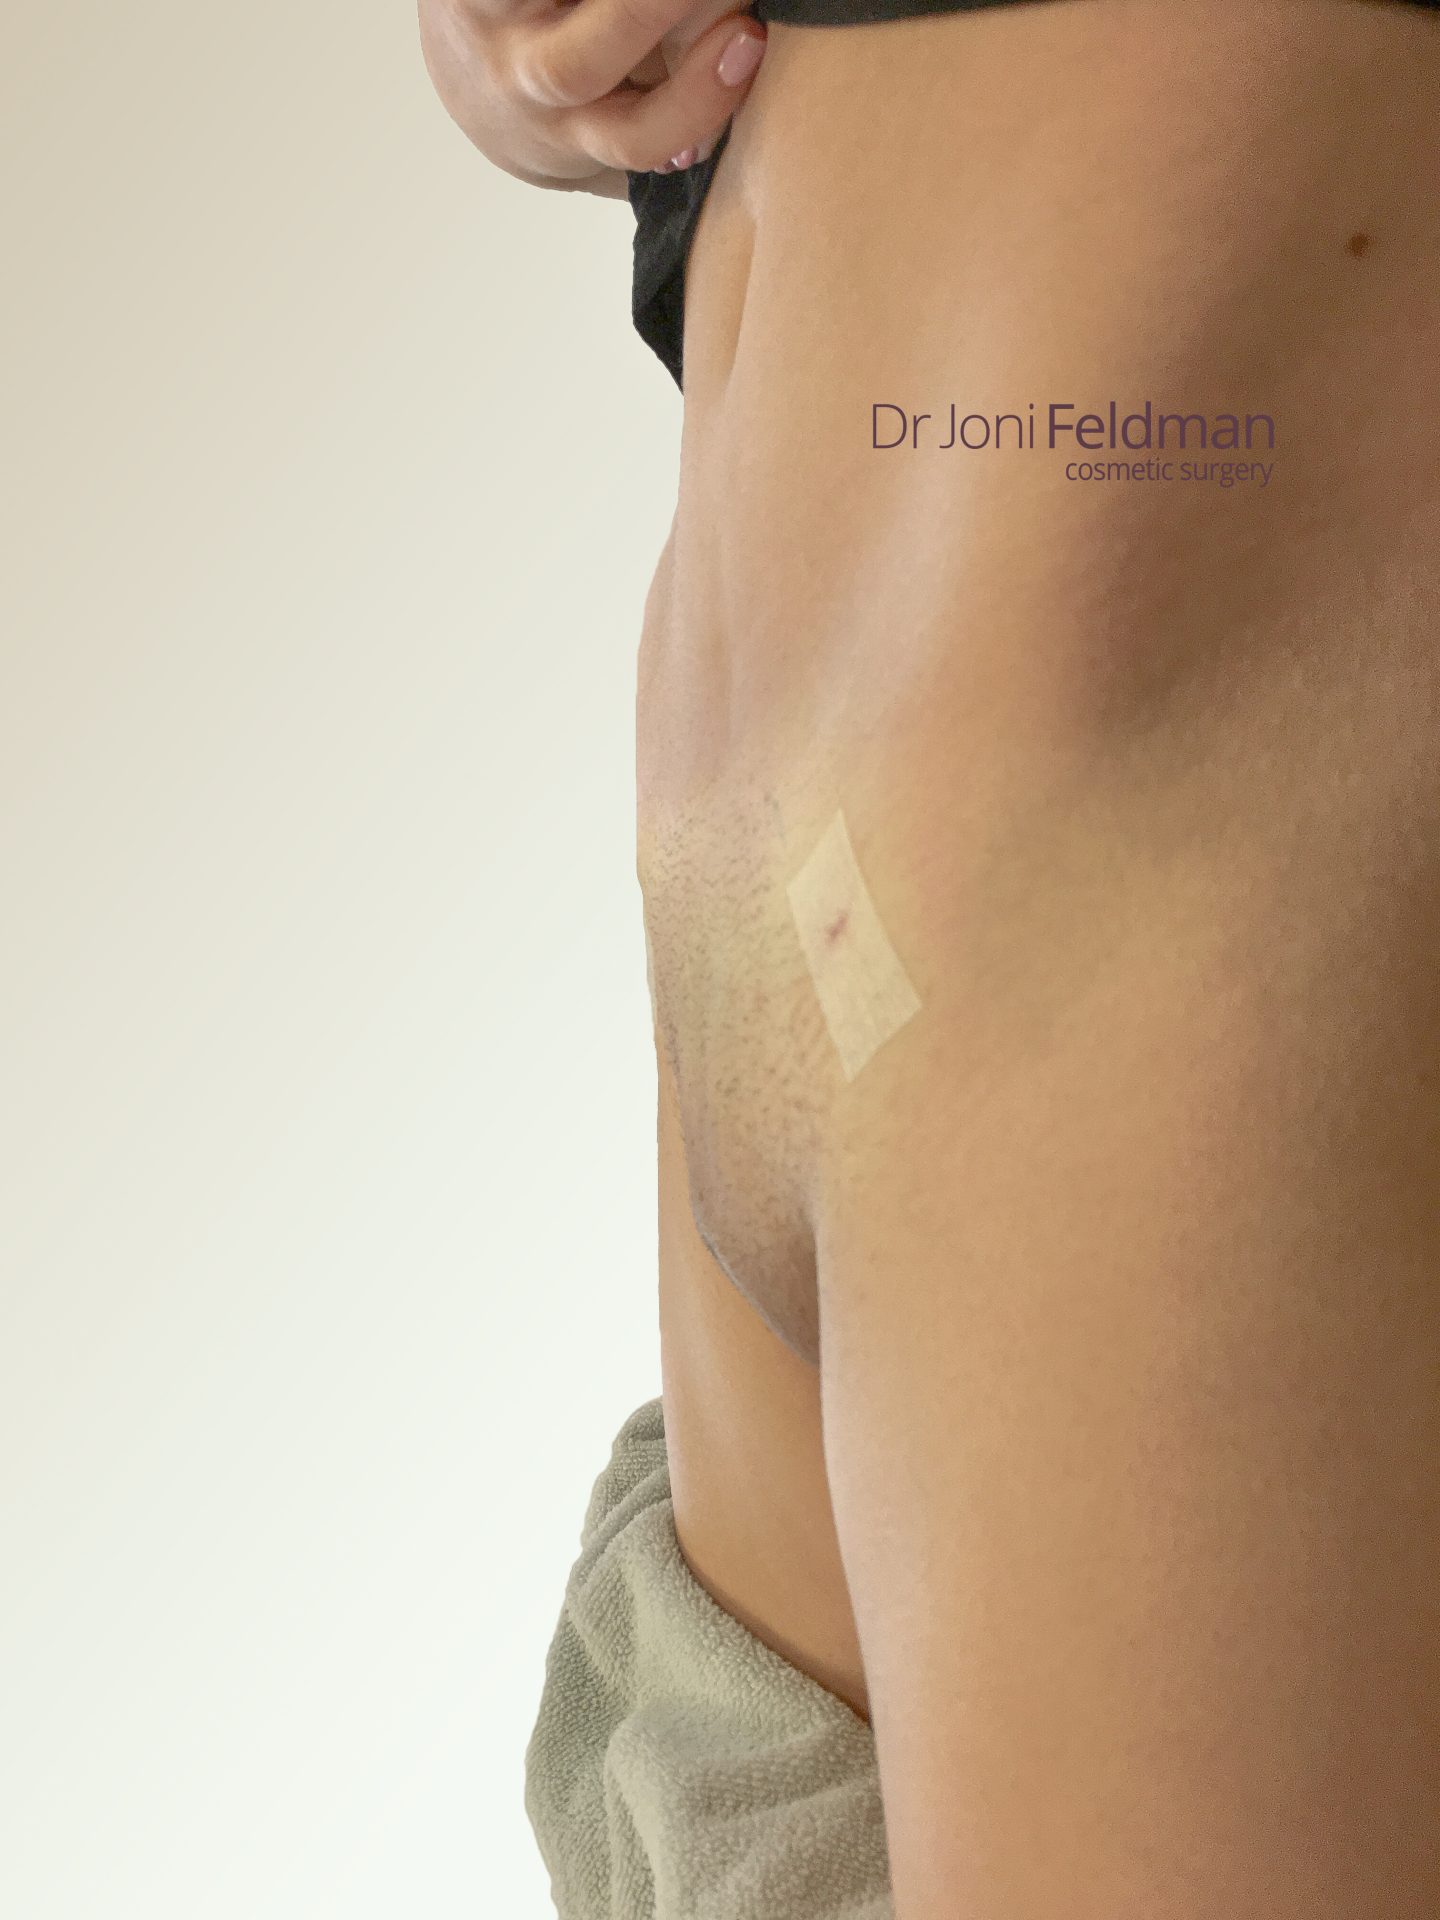 FUPA Mons pubis Liposuction - AFTER -Dr Joni Feldman - Melbourne